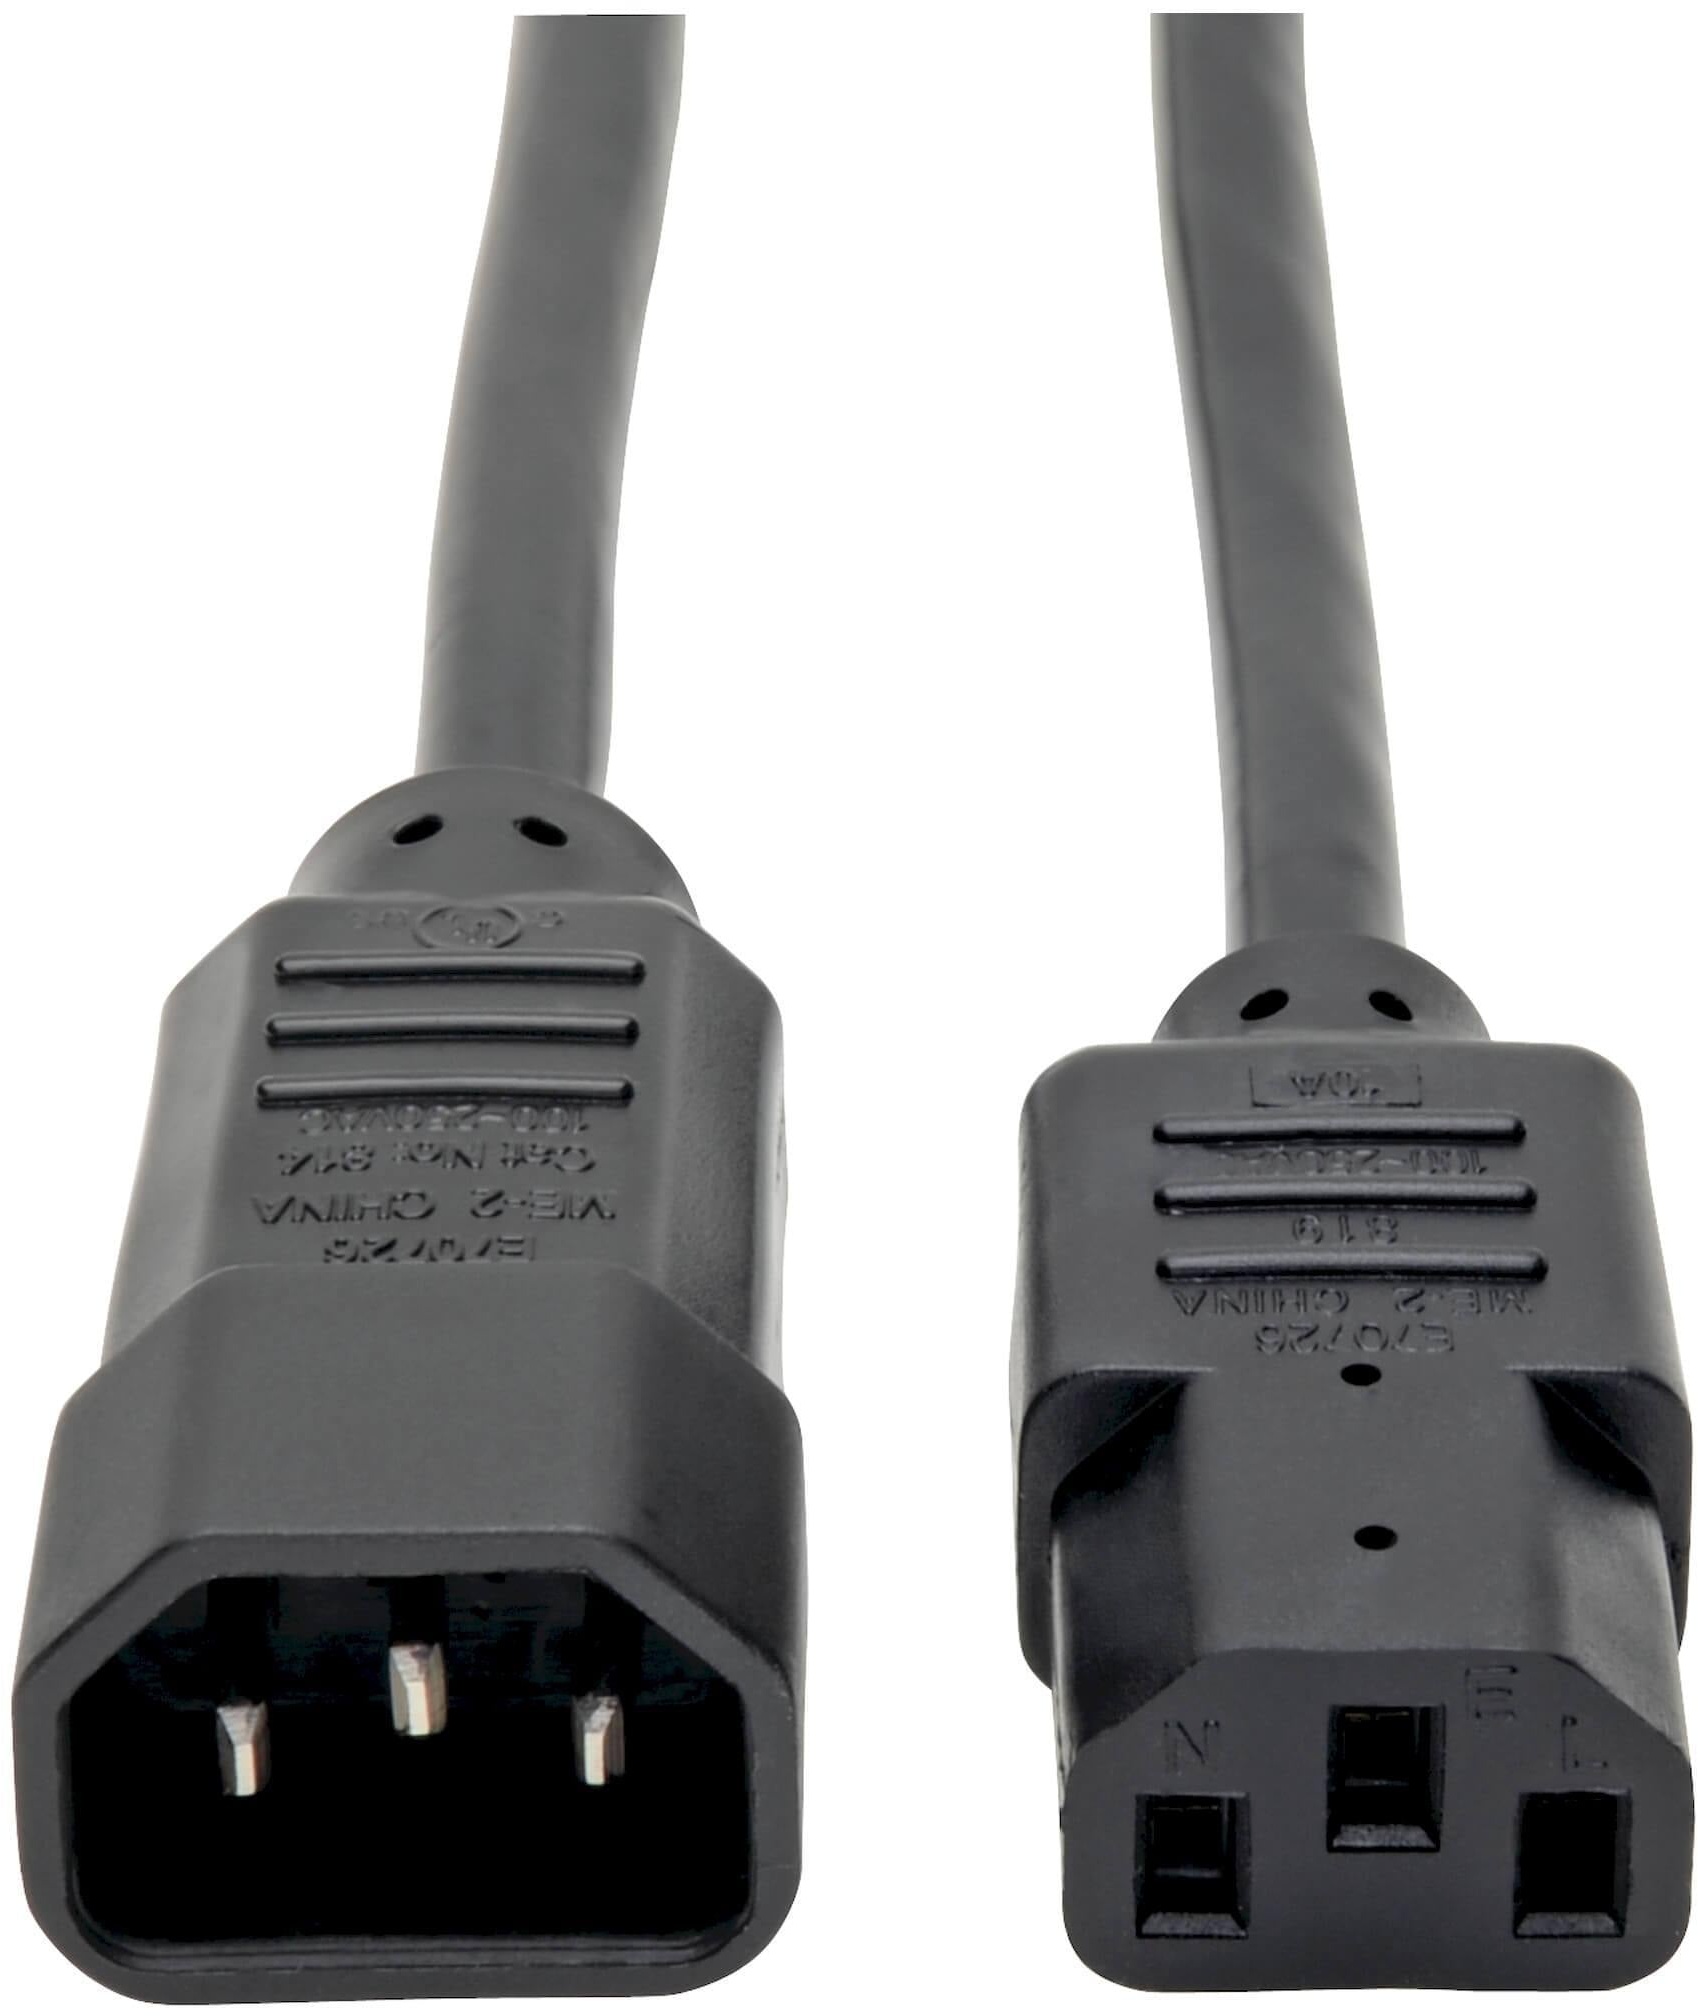 Tripp-Lite P004-003: Hochwertiges und langlebiges Netzkabel für eine zuverlässige Stromversorgung Ihrer Geräte!